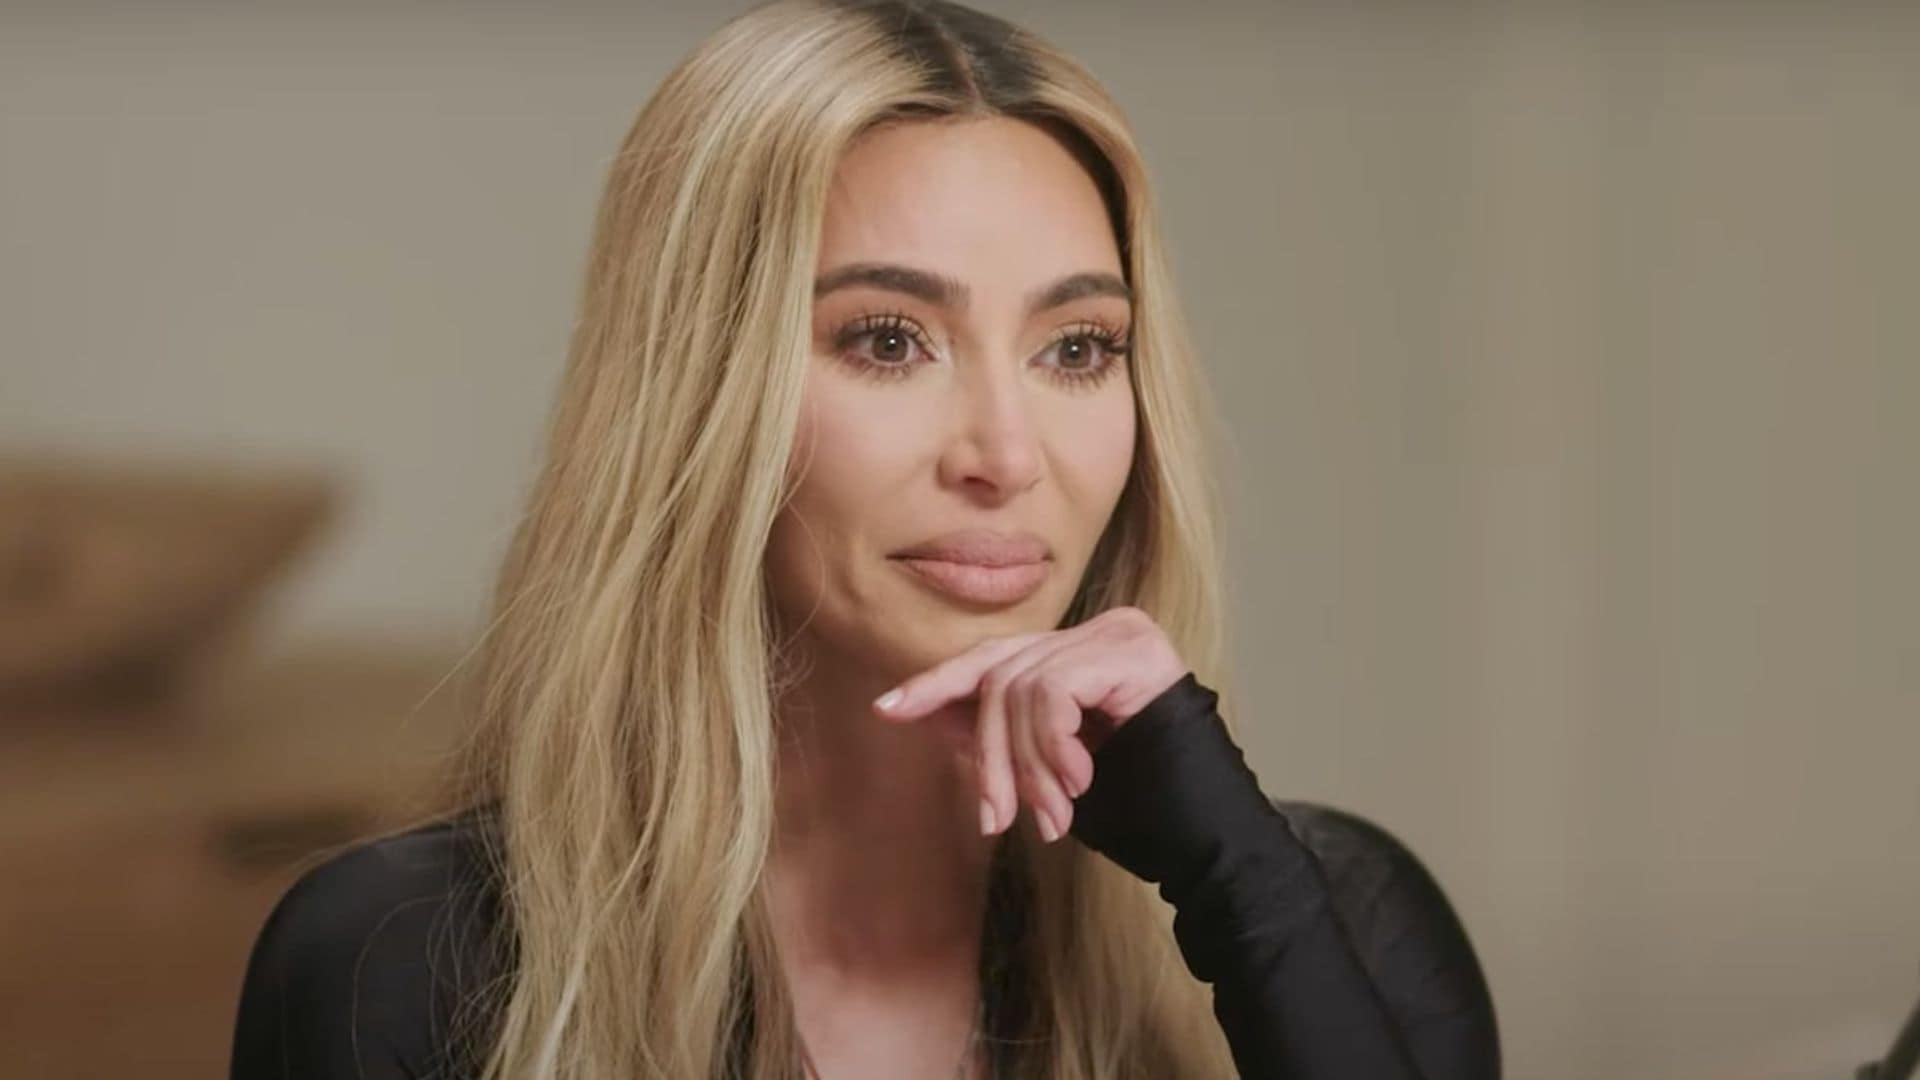 Kim Kardashian’s emotional revelation: The reality TV star says she wants the old Kanye West back